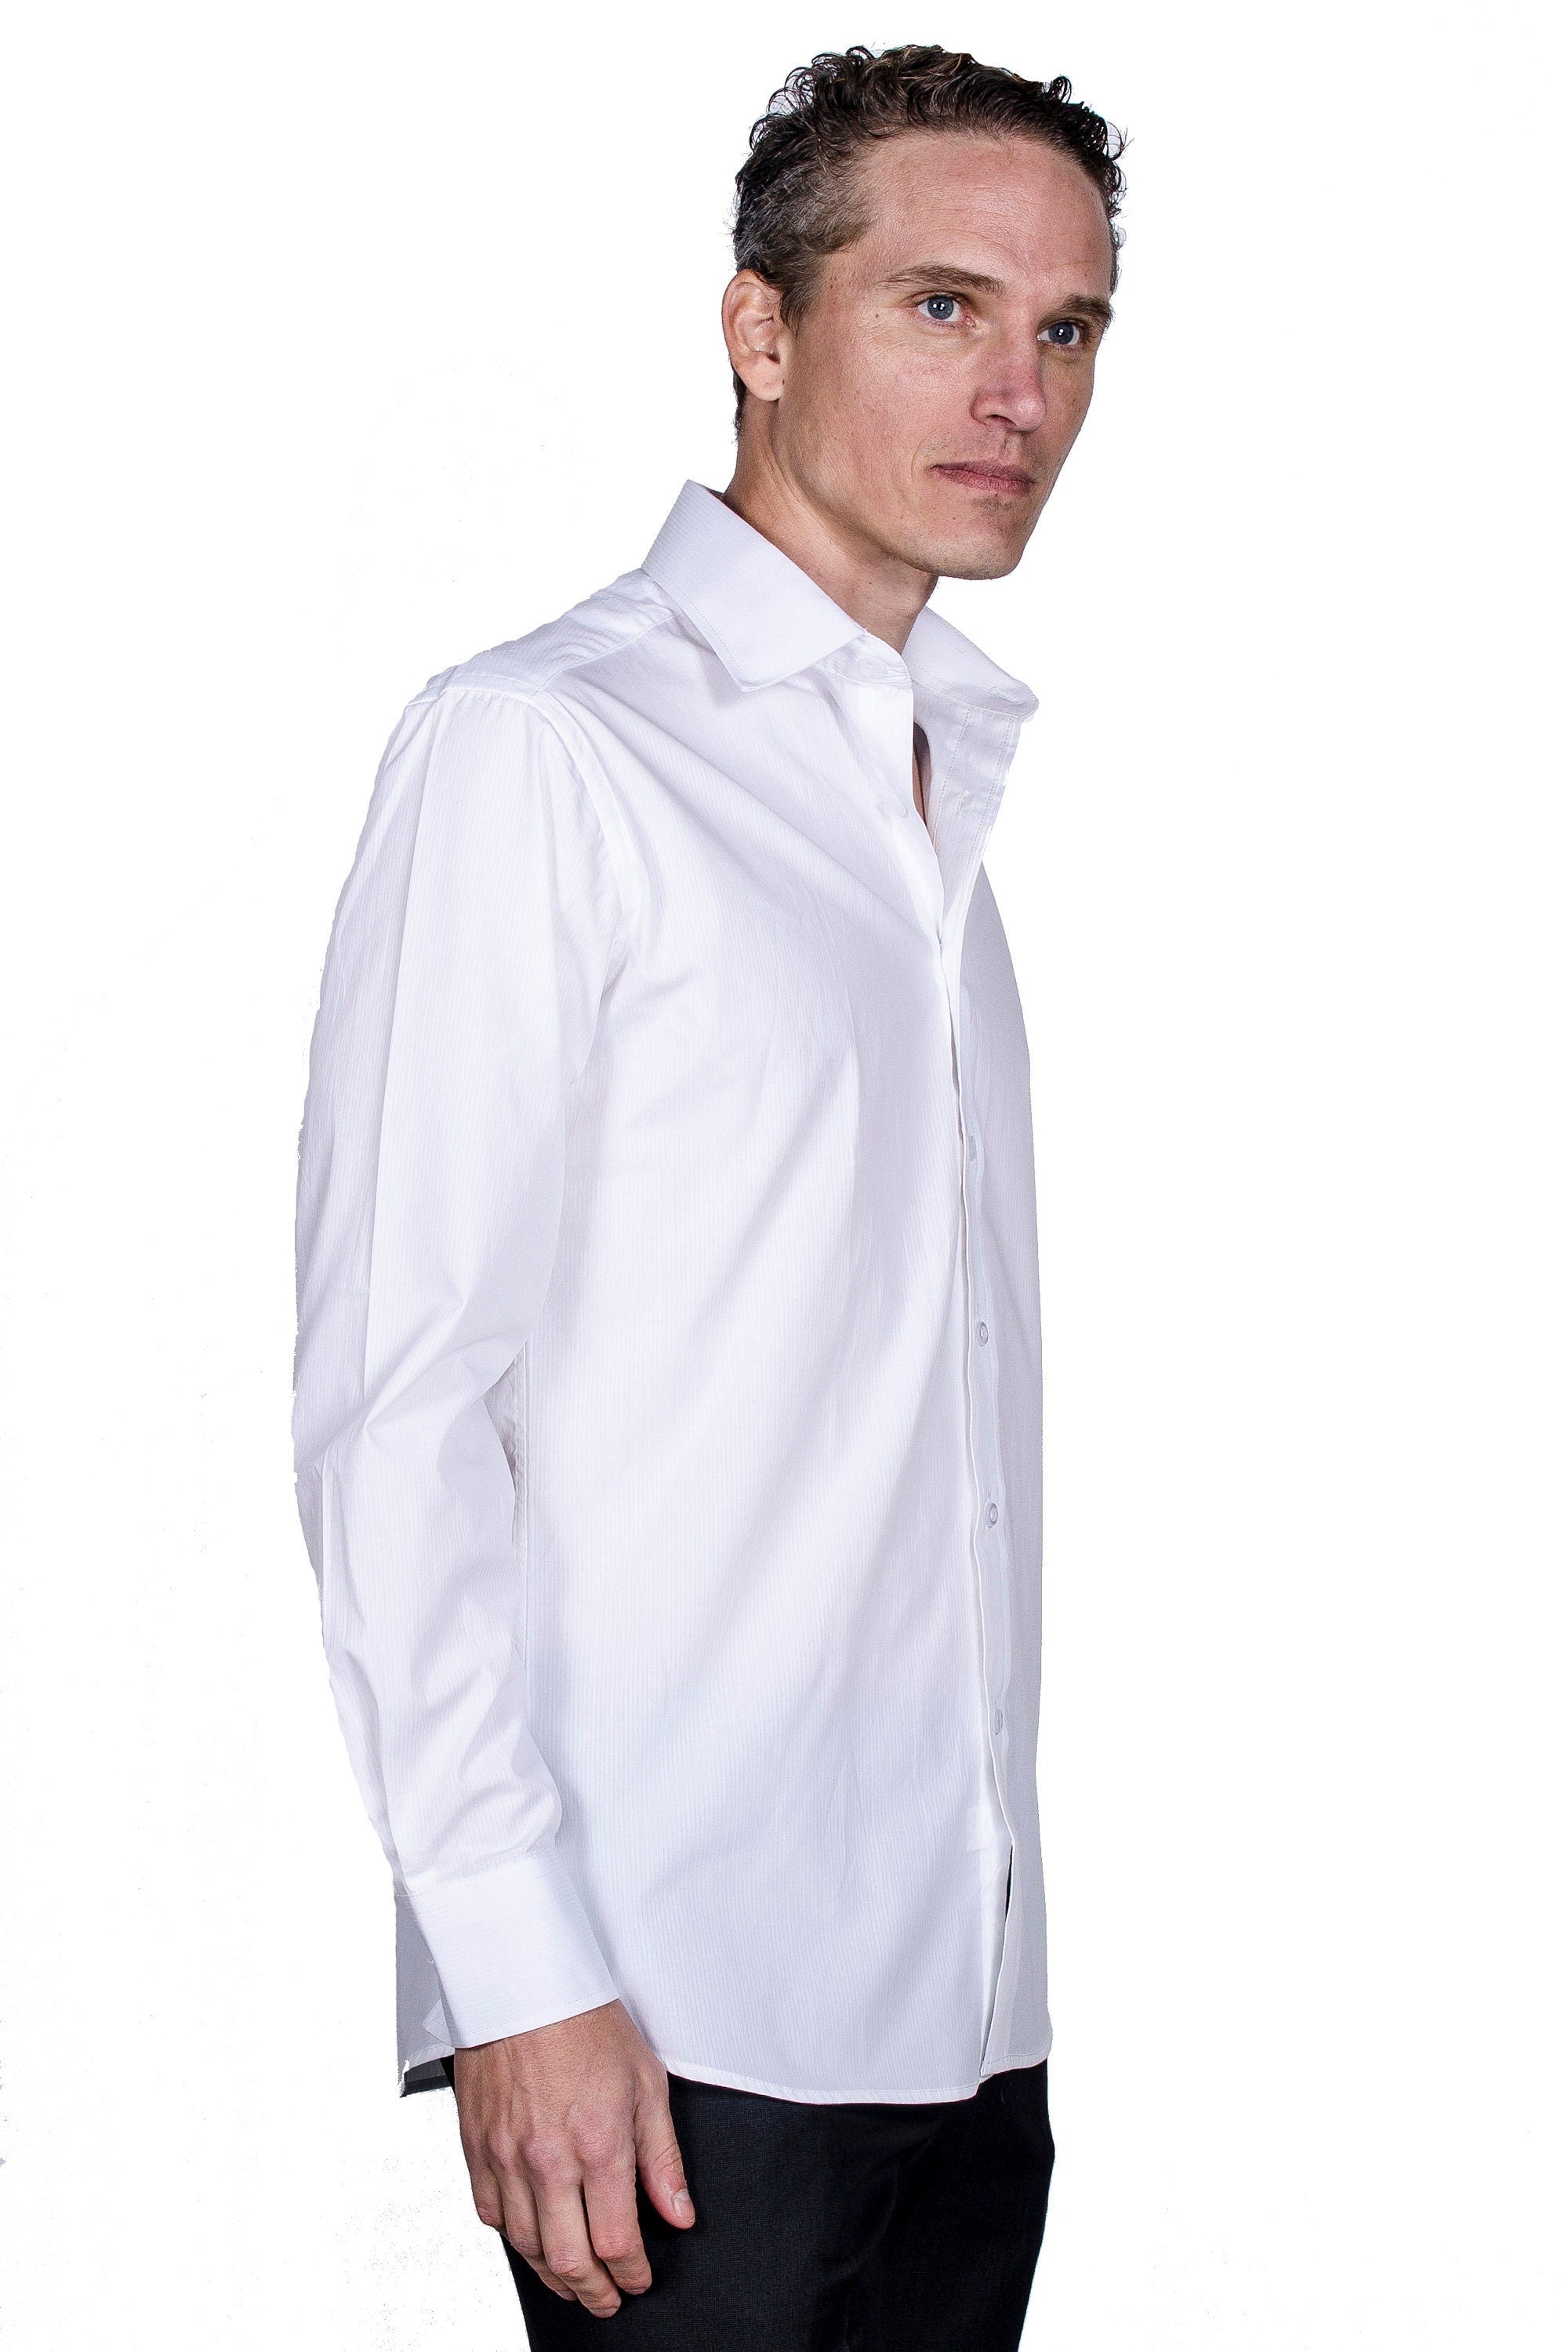 KOVROS Men's Premium Designer Dress Shirt, White